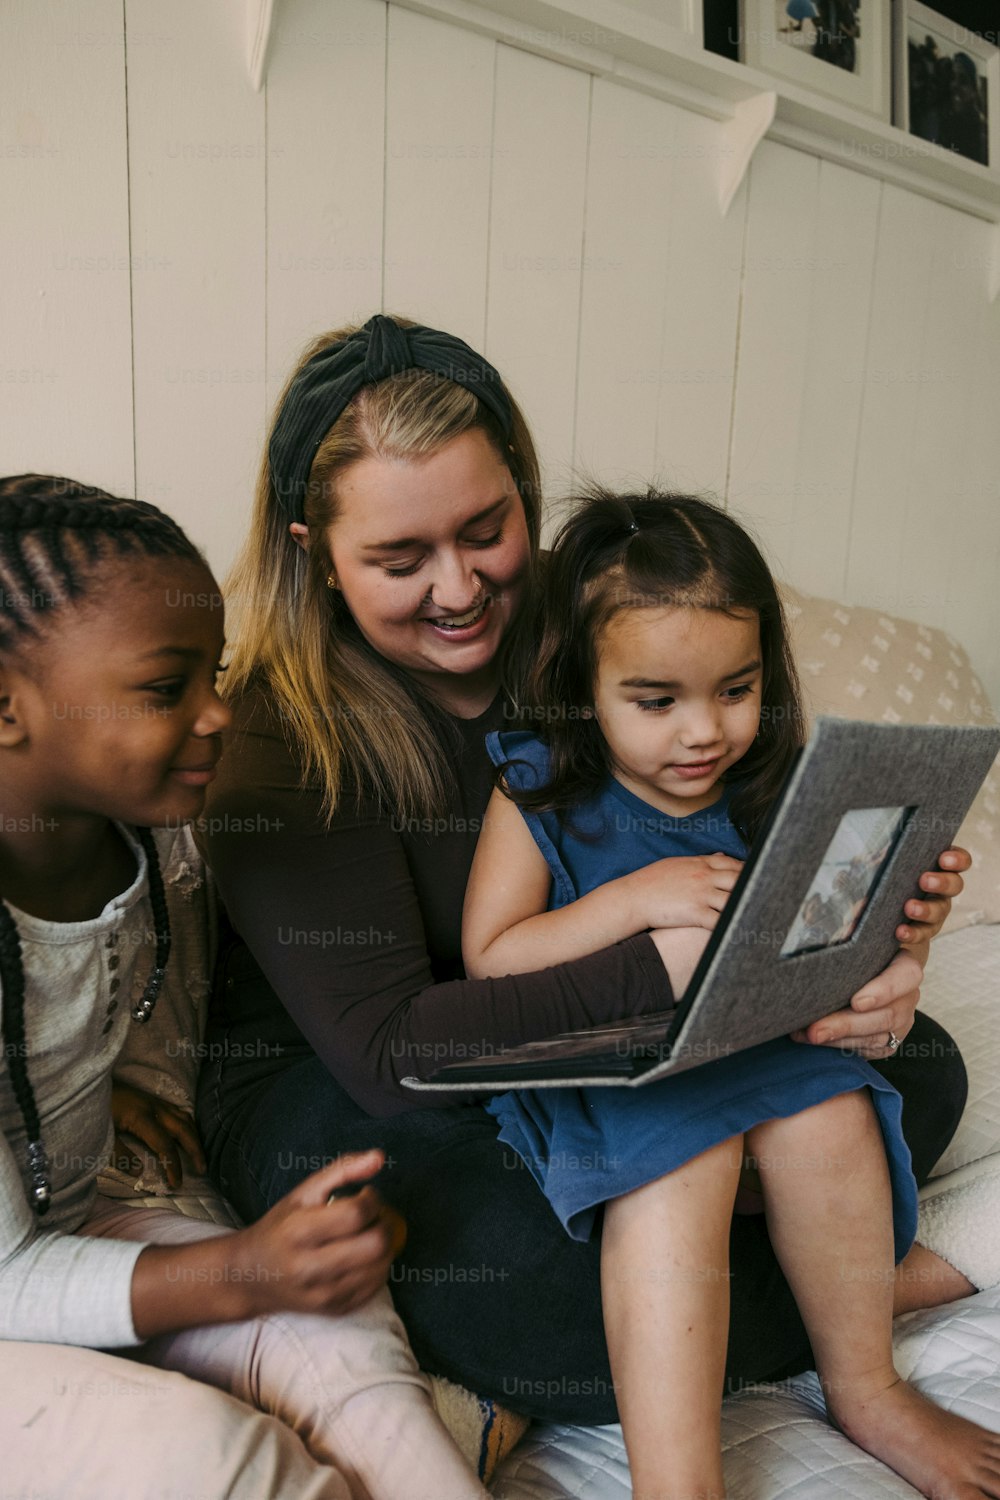 Une femme et deux enfants assis sur un lit regardant un ordinateur portable